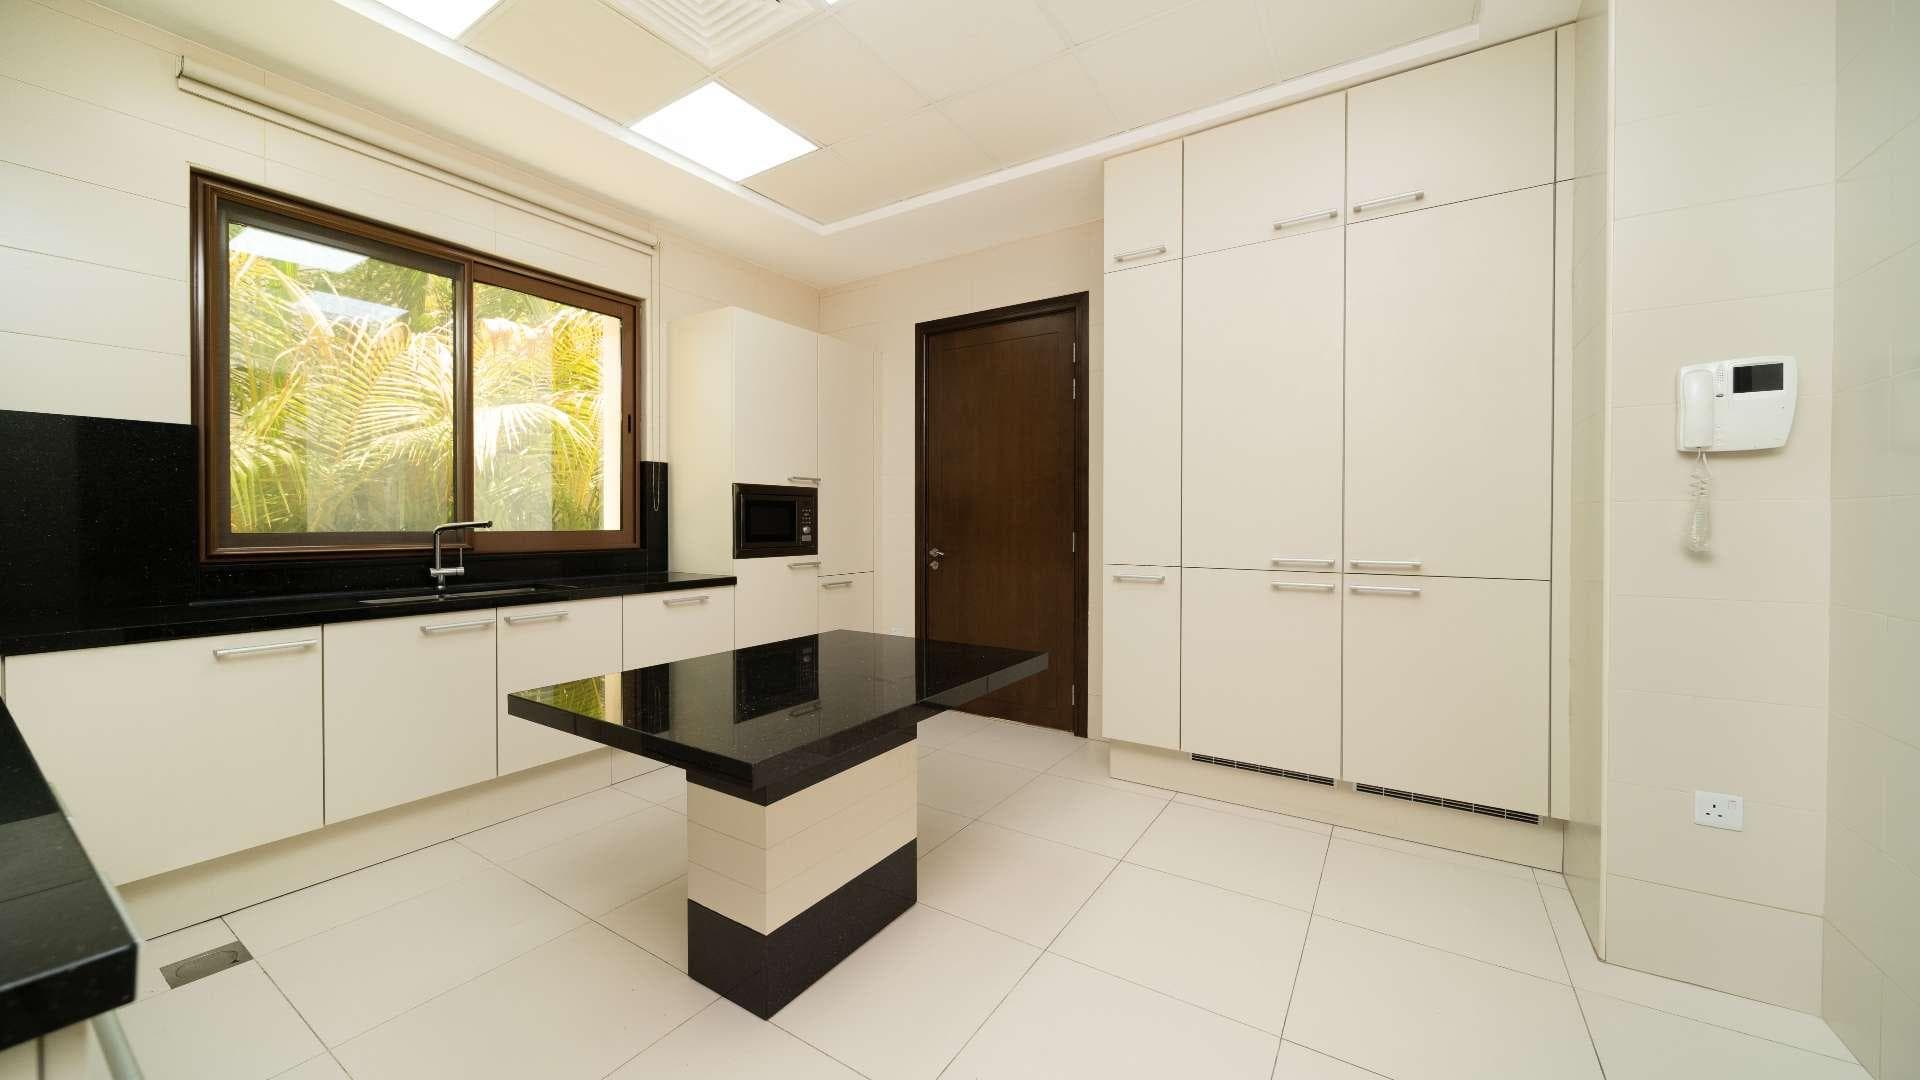 5 Bedroom Villa For Rent Meydan Gated Community Lp13586 1b03f94916fcc900.jpg